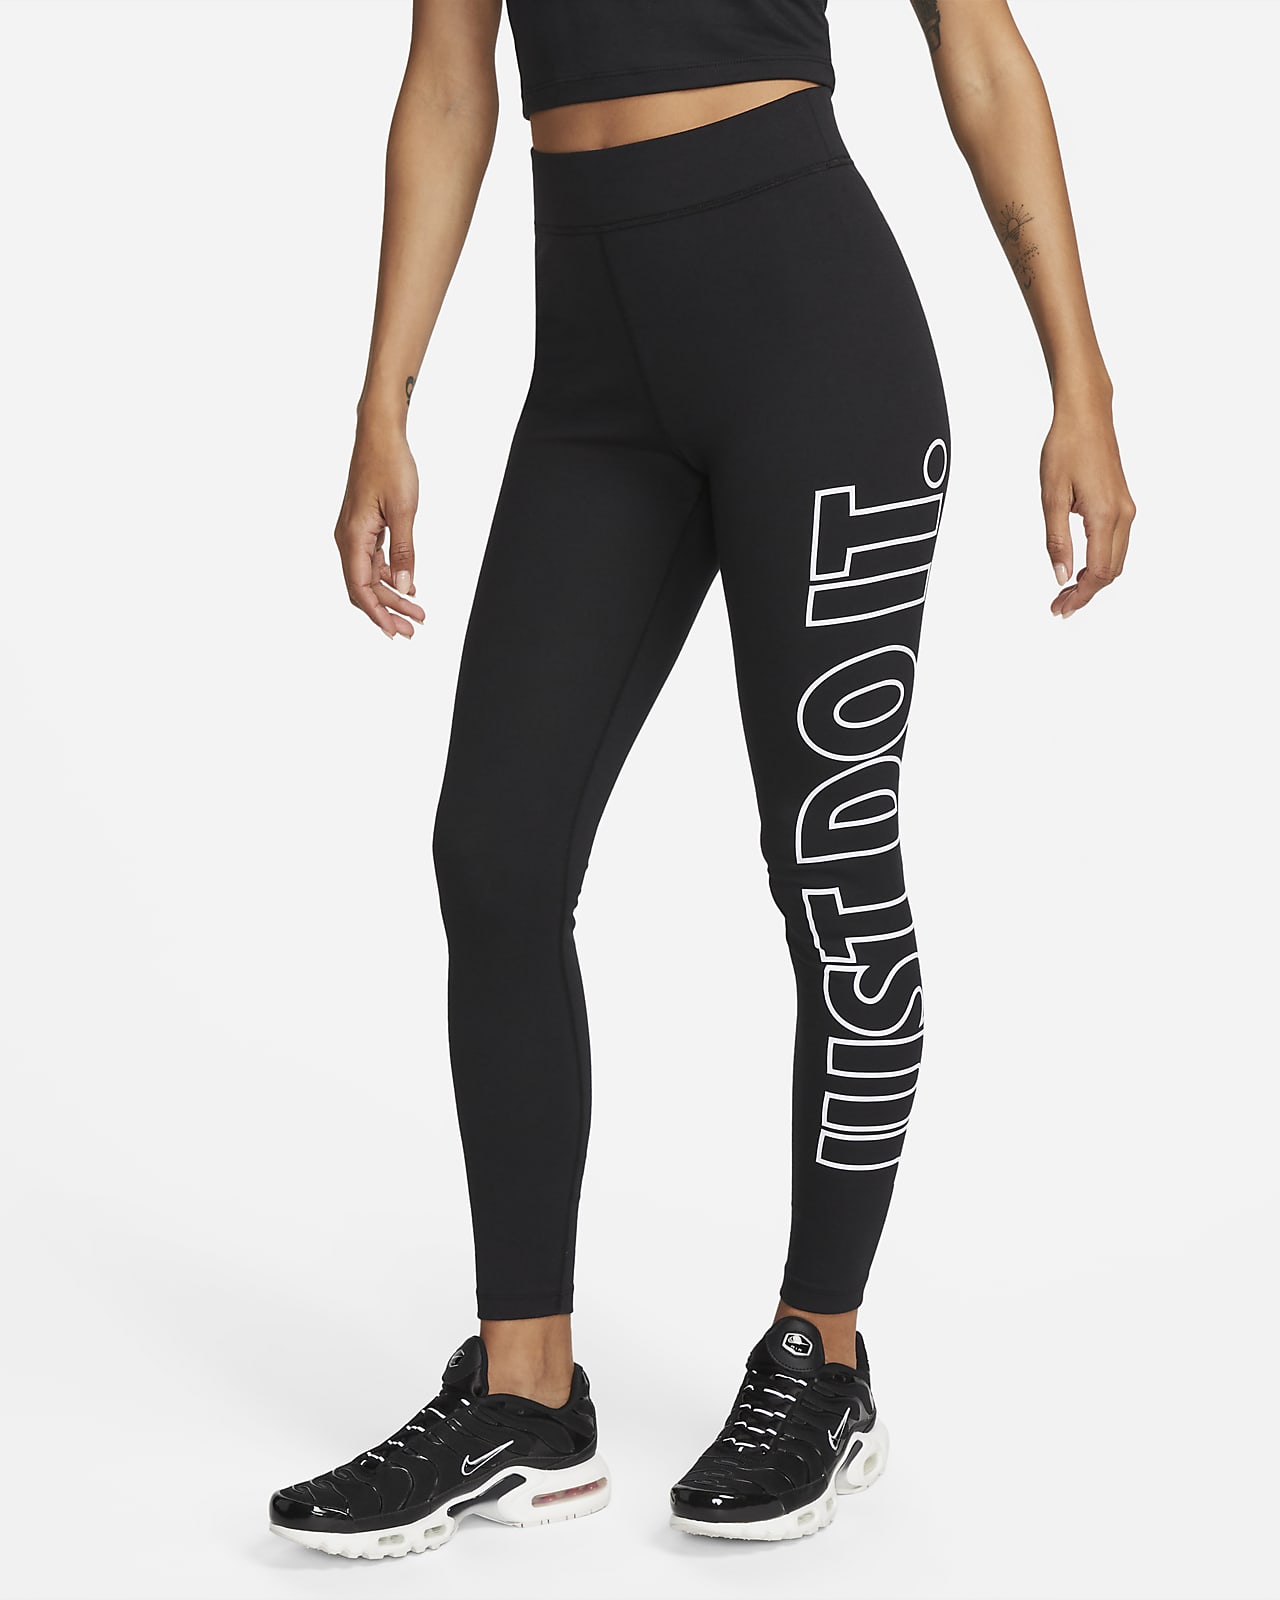 Nike Sportswear Fierce Python Print Women's Leggings Knit Fabric